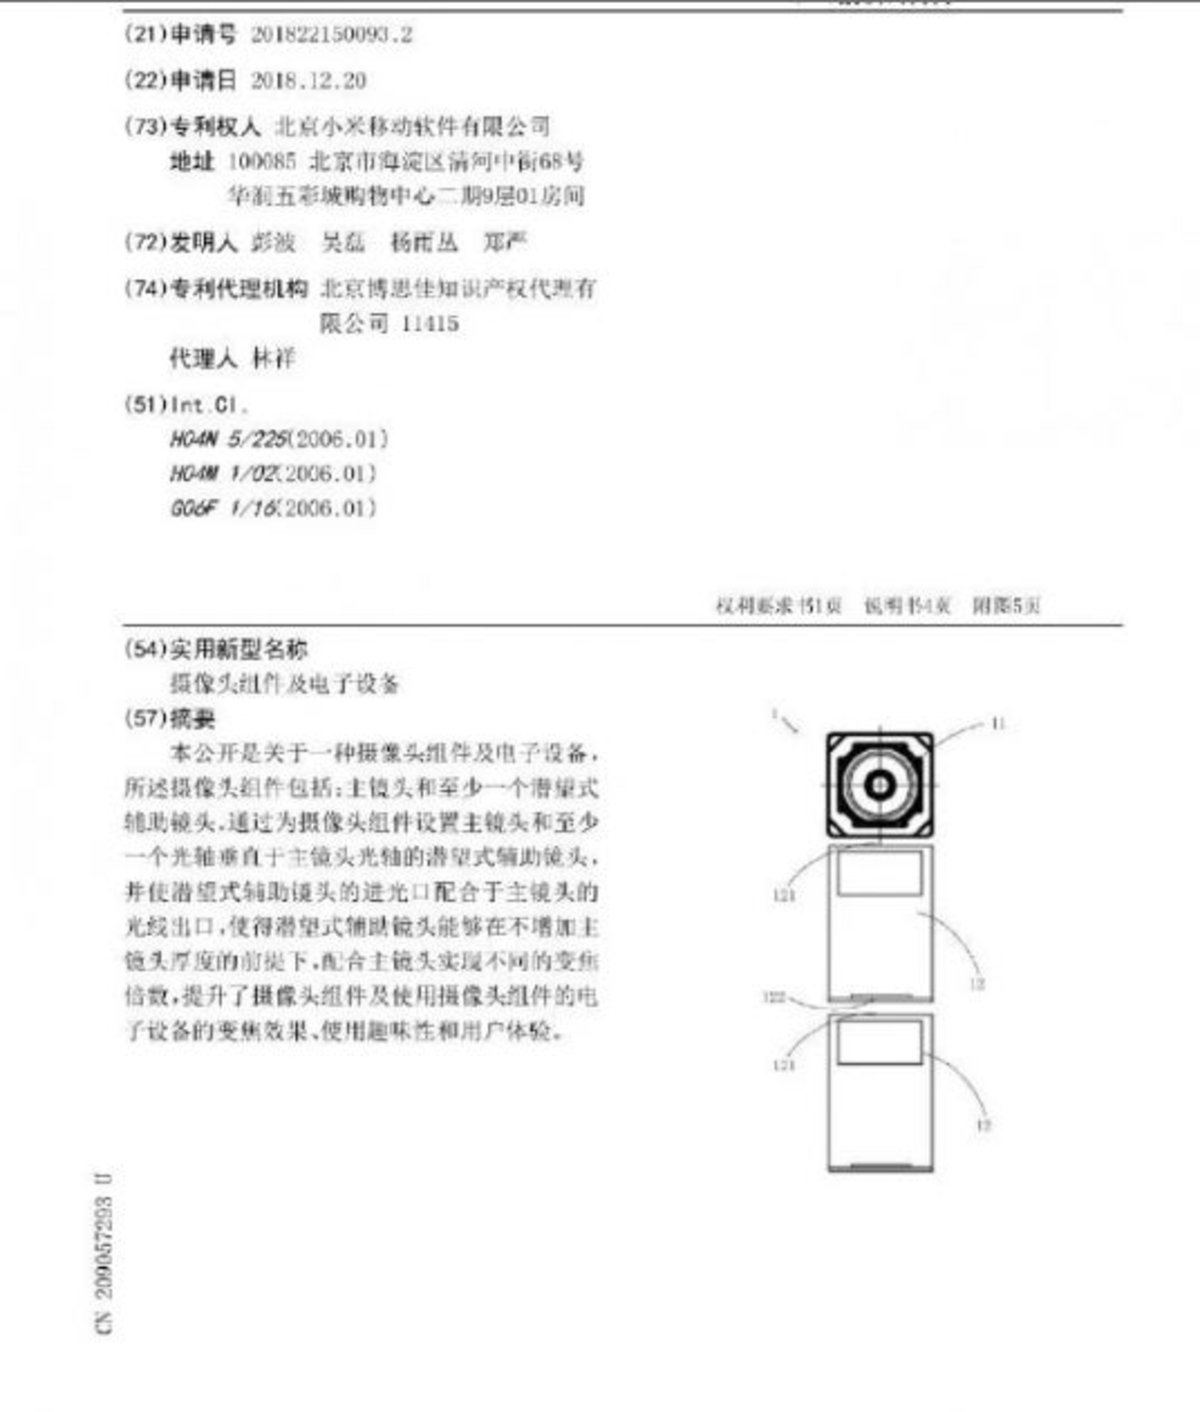 Xiaomi patente cámara